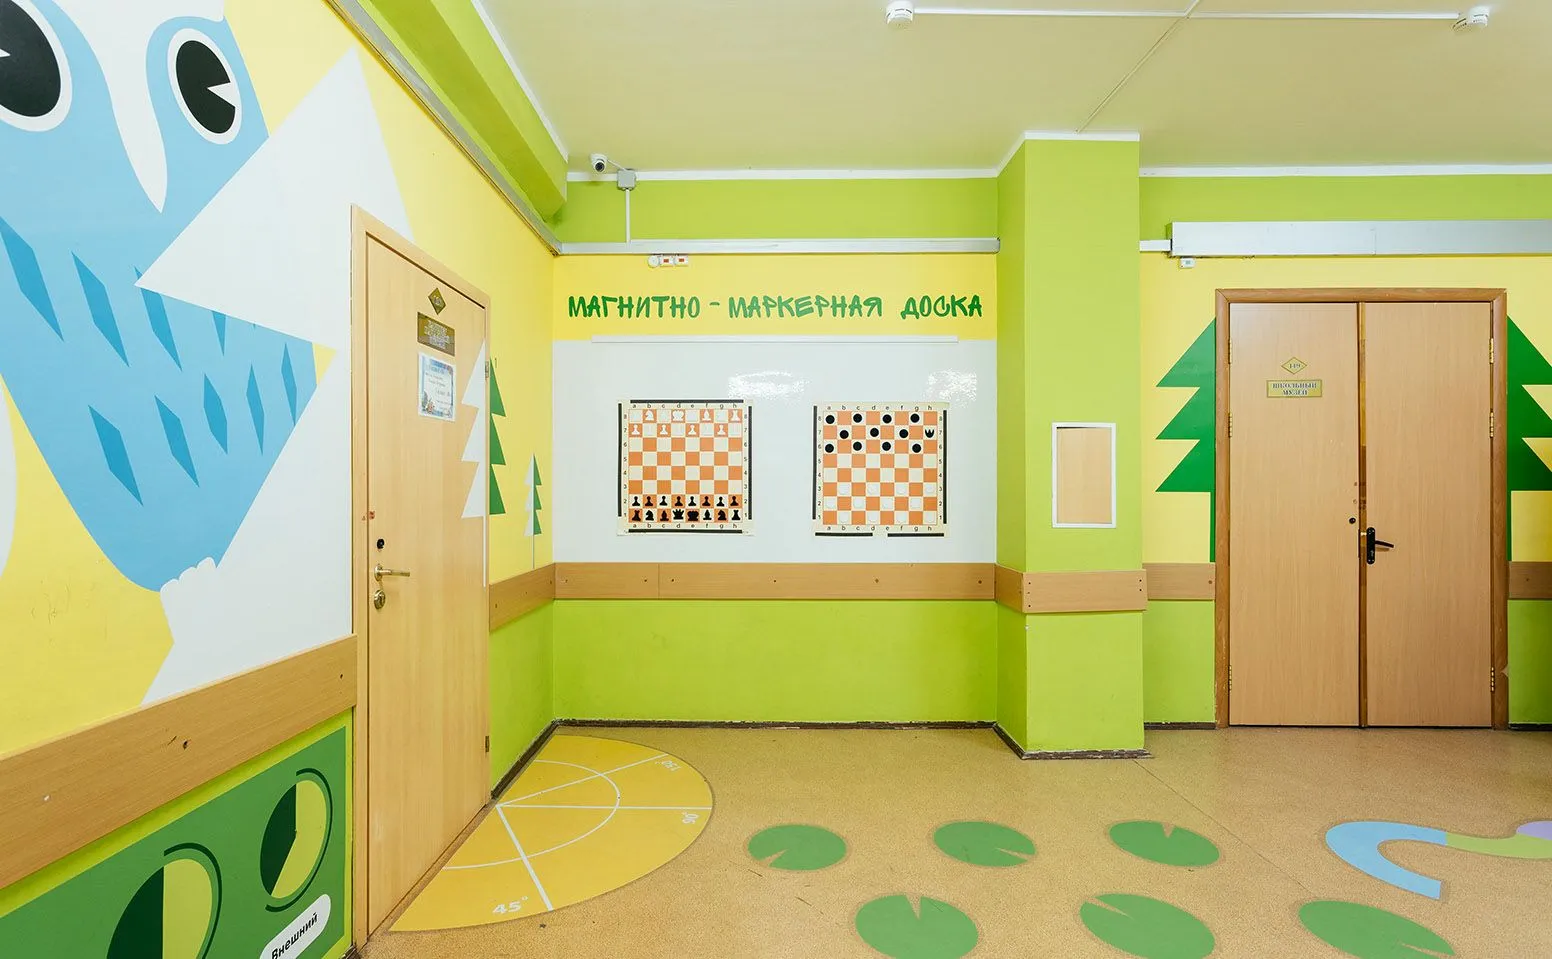 Фотографии и примеры оформления творческих уголков и стен в детском саду